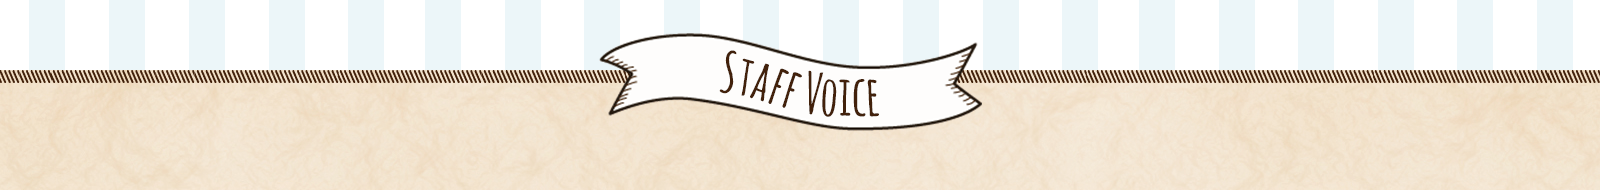 Staff Voice